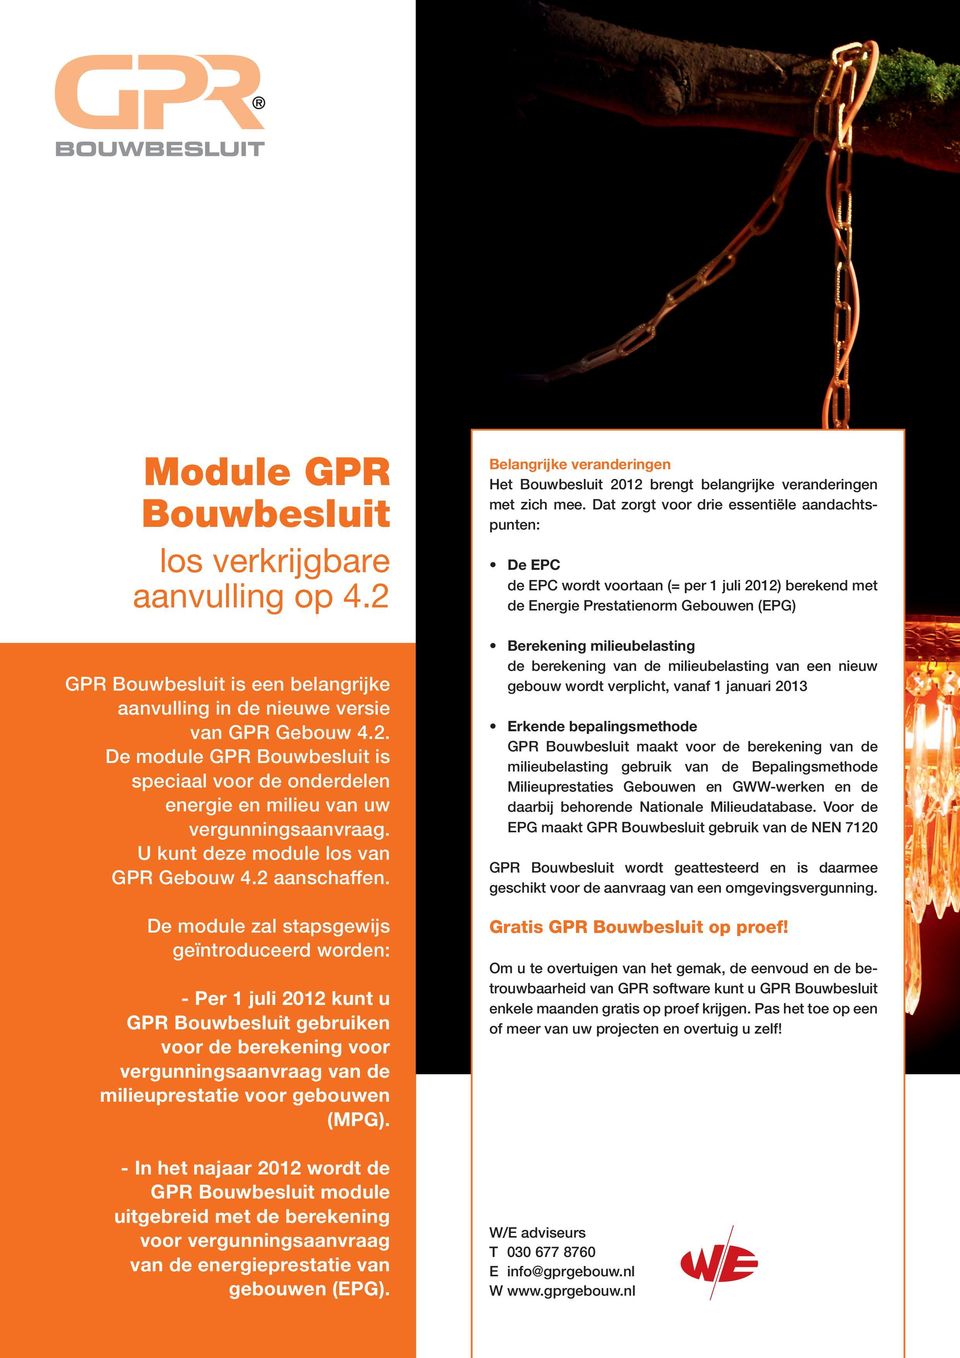 De module zal stapsgewijs geïntroduceerd worden: - Per 1 juli 2012 kunt u GPR Bouwbesluit gebruiken voor de berekening voor vergunningsaanvraag van de milieuprestatie voor gebouwen (MPG).